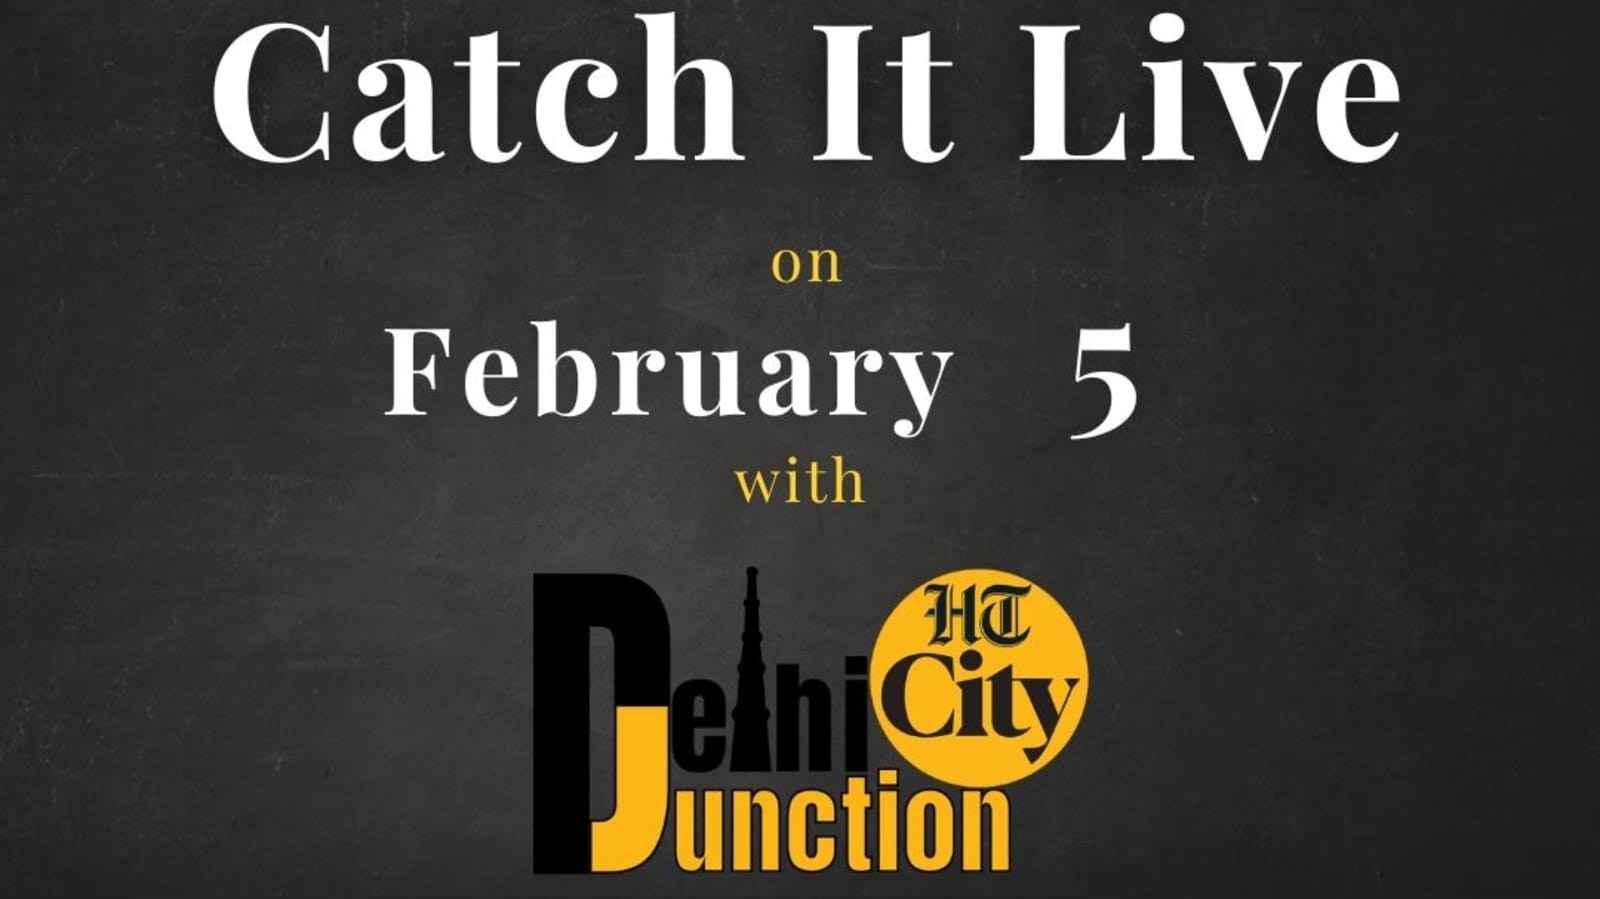 एचटी सिटी दिल्ली जंक्शन: 5 फरवरी को कैच इट लाइव